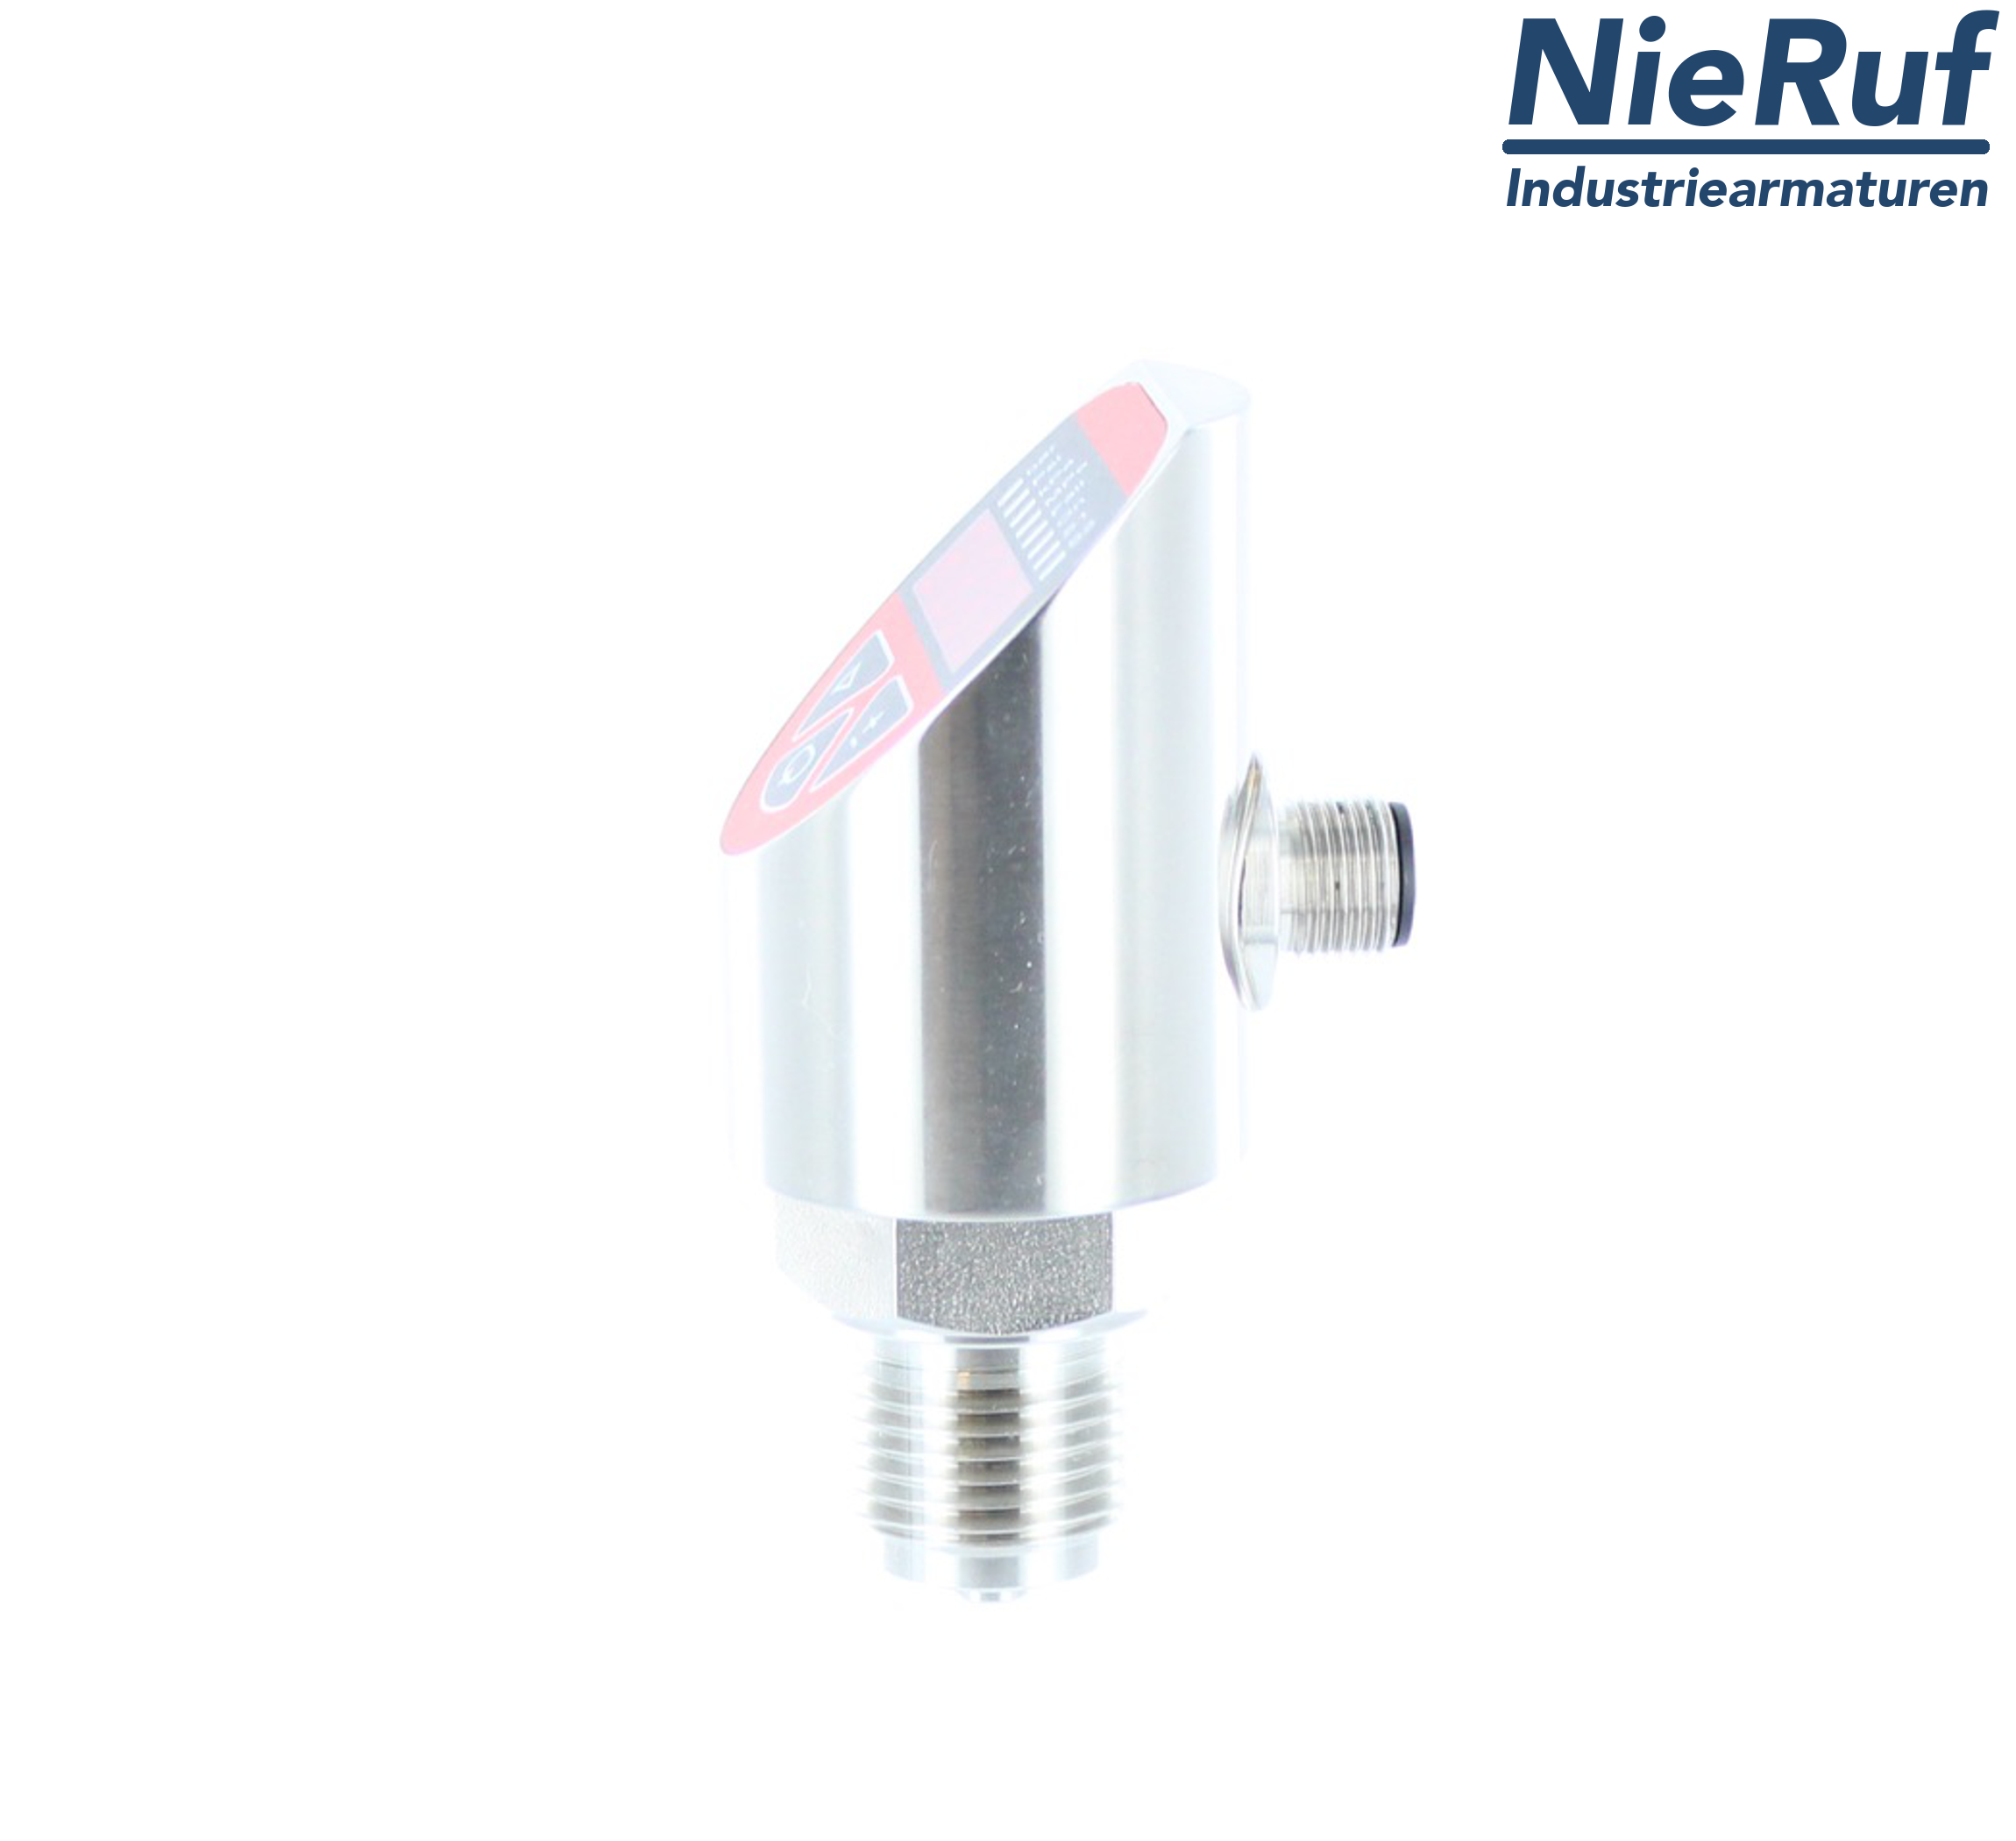 digital pressure sensor G 1/2" B 4-wire: 1xPNP, 1x4 - 20mA, Desina FPM 0,0 - 2,5 bar